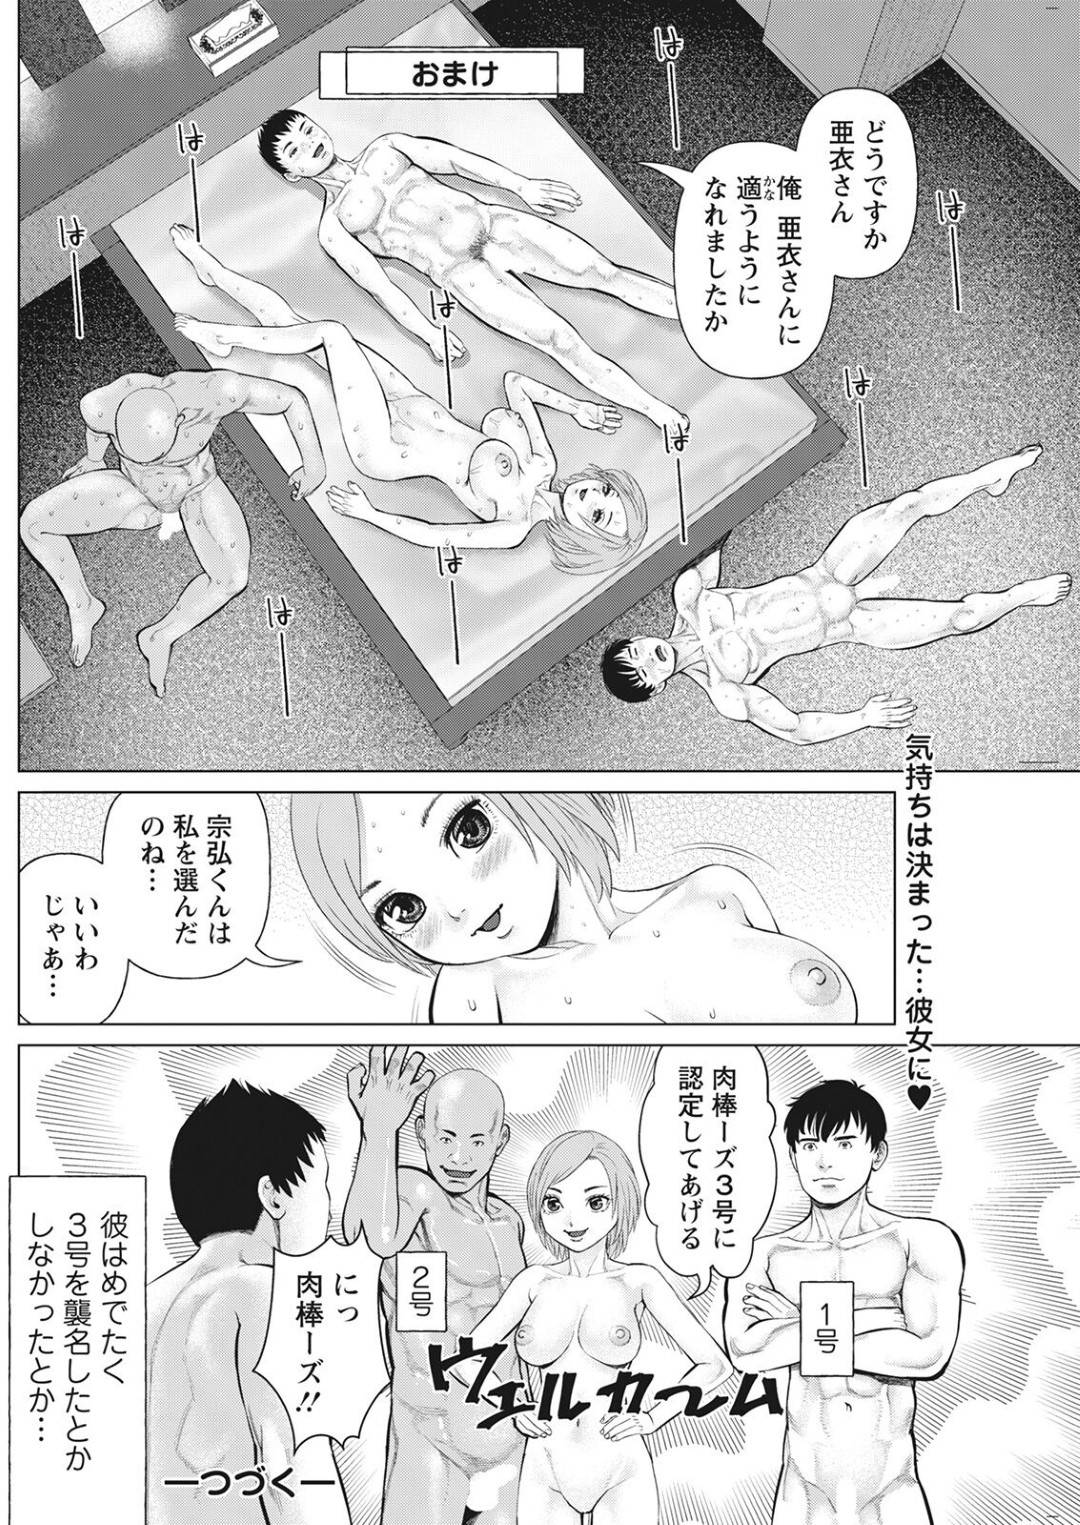 【エロ漫画】二人の青年を誘惑しちゃうビッチな巨乳のお姉さん。フェラをされながらクンニをして3Pセックスで中出し絶頂アクメ堕ち